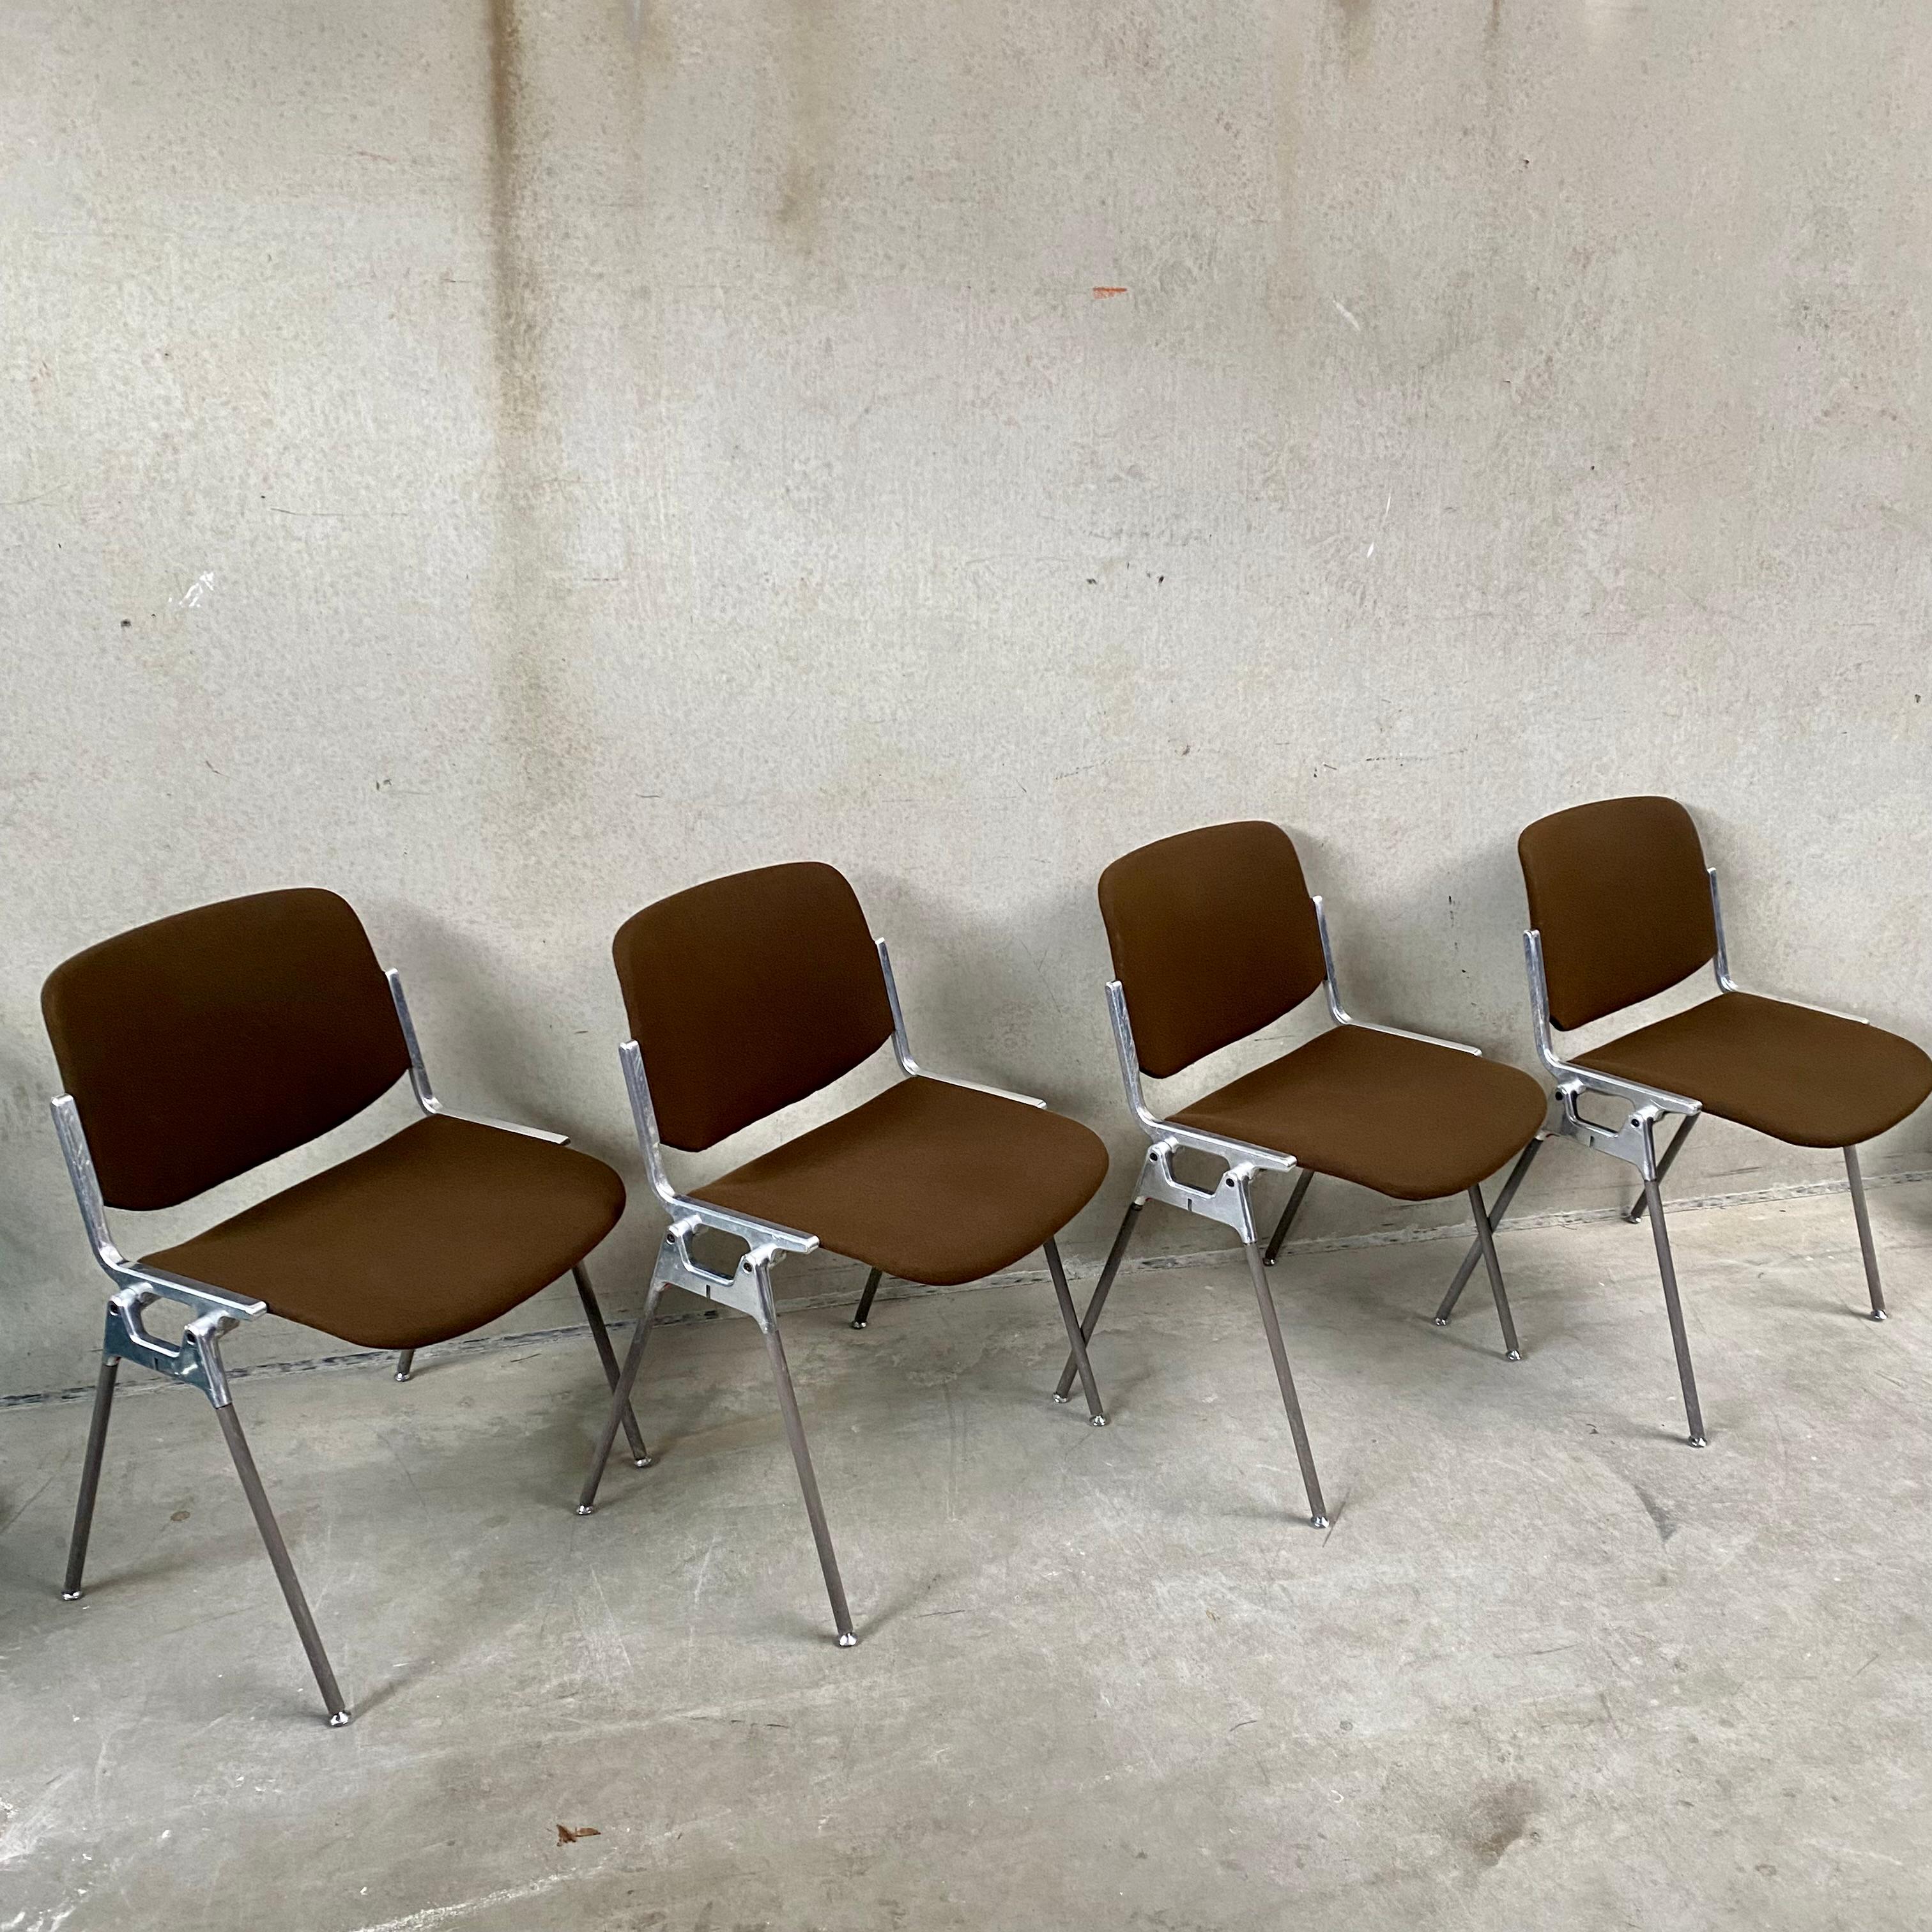 Vous recherchez un ensemble de chaises de salle à manger élégant et pratique qui offre à la fois confort et fonctionnalité ? Ne cherchez pas plus loin que le Castelli DSC 106 de Giancarlo Piretti, un célèbre designer italien qui a eu un impact